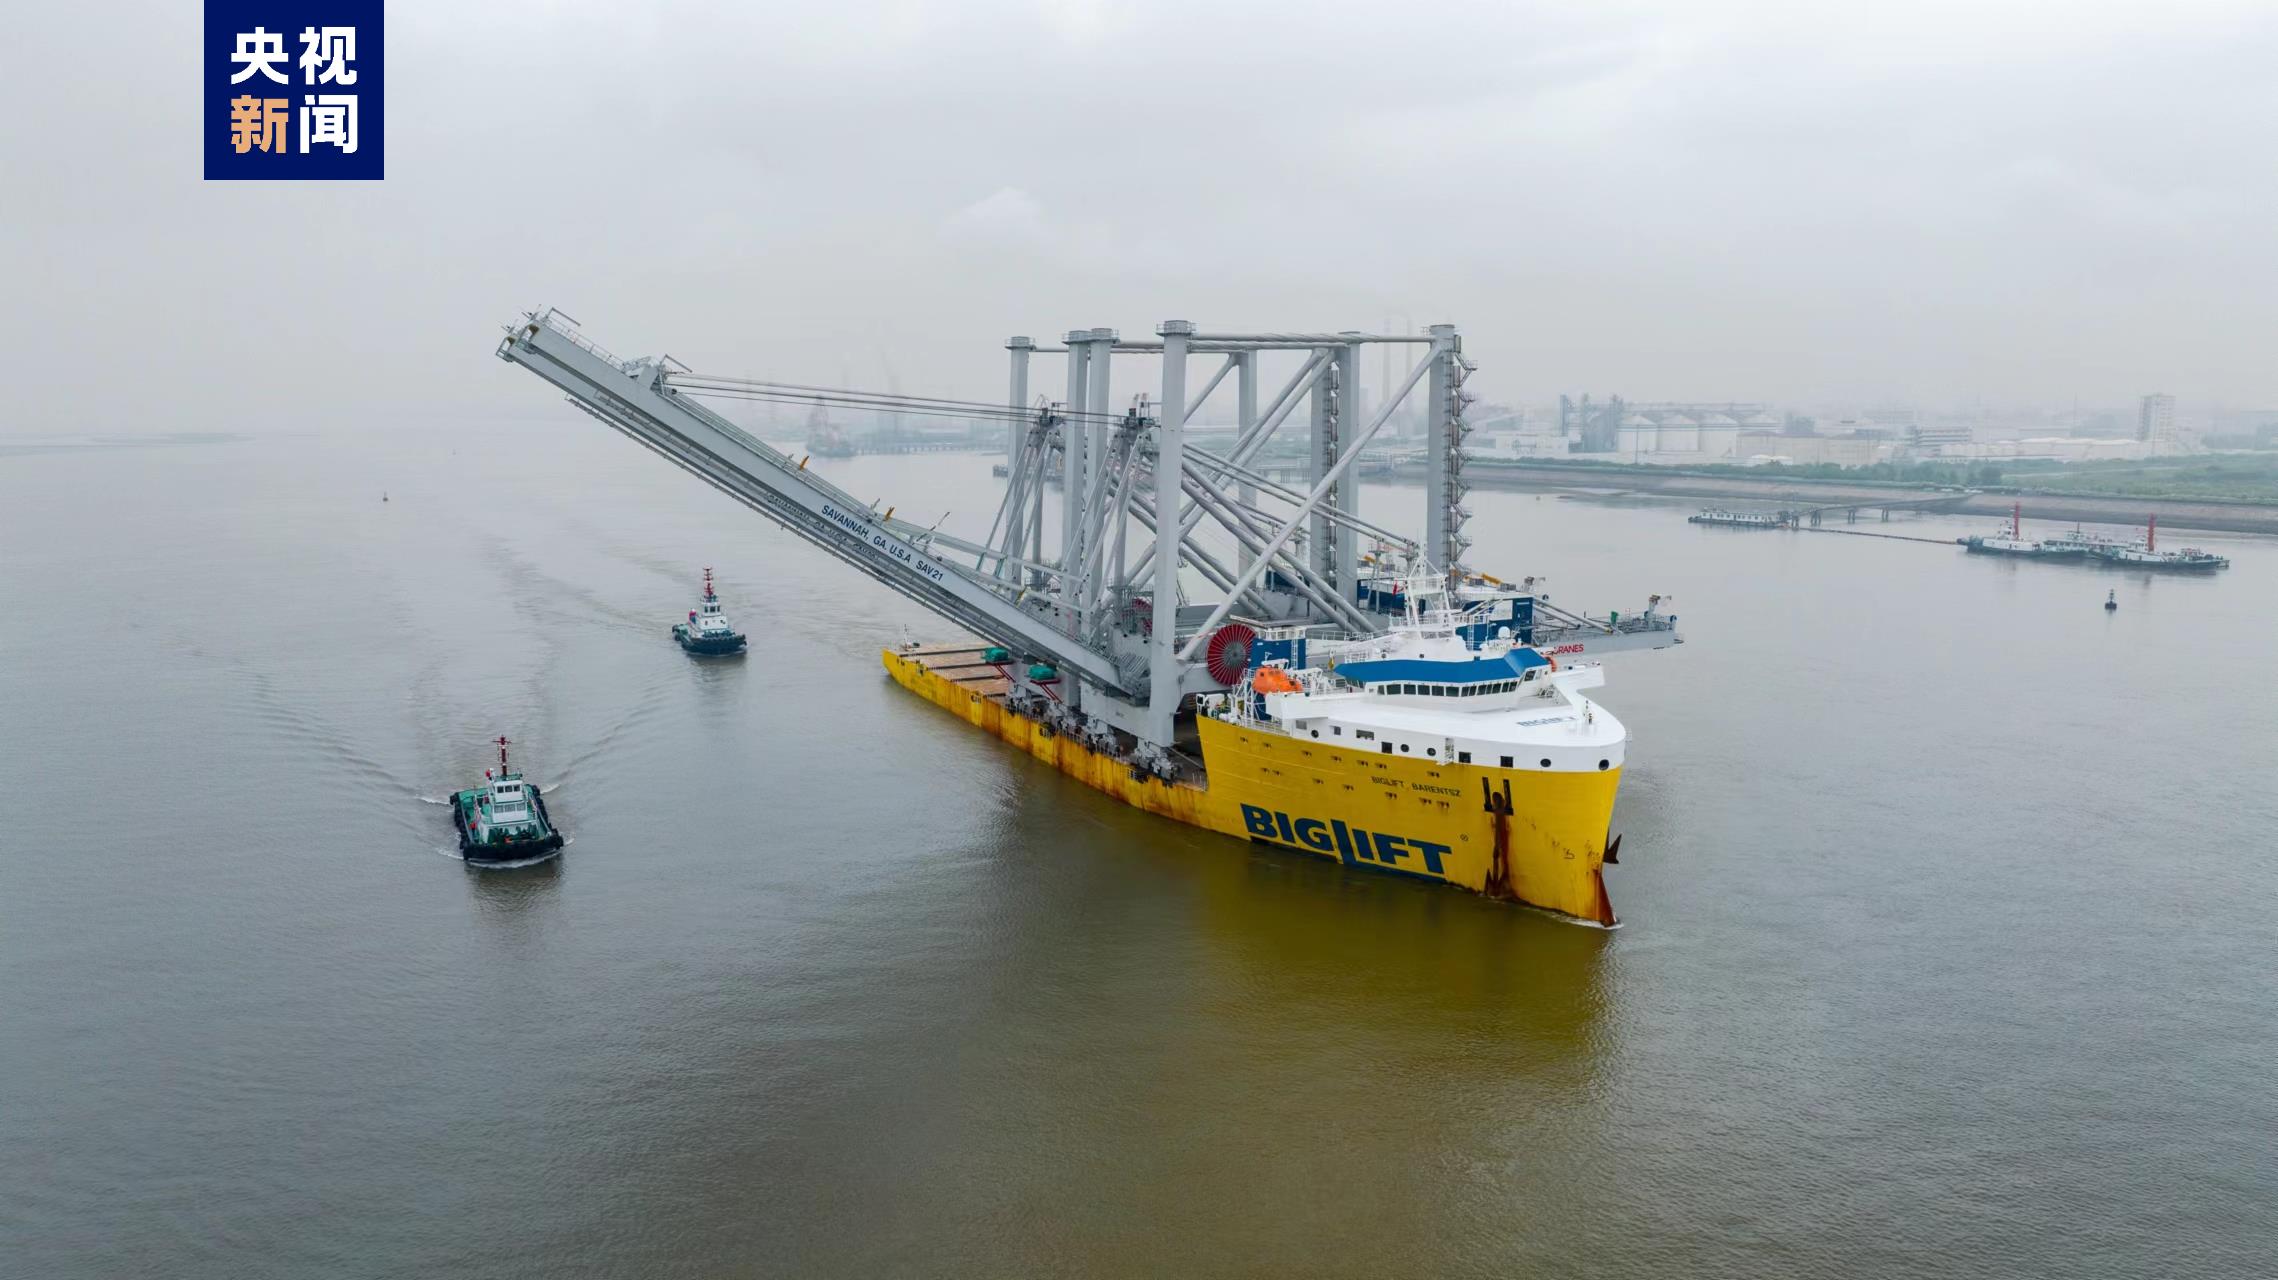 最大宽度近160米！装载世界上最大集装箱桥式起重机的“巴伦支海”轮启航